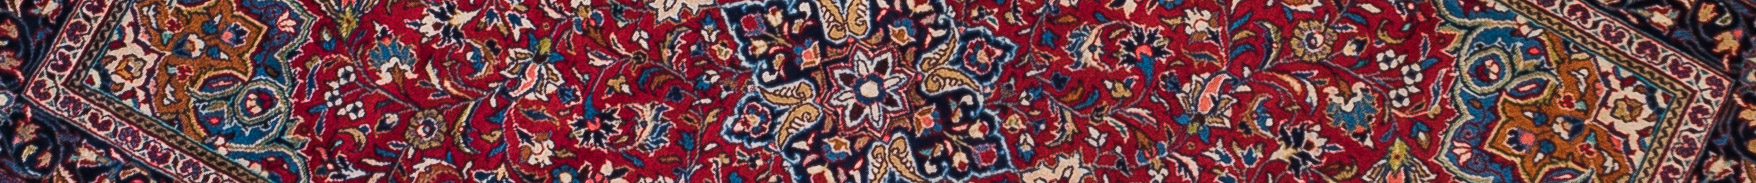 Sarouq Persian Carpet Rug N1Carpet Canada Montreal Tapis Persan 1950